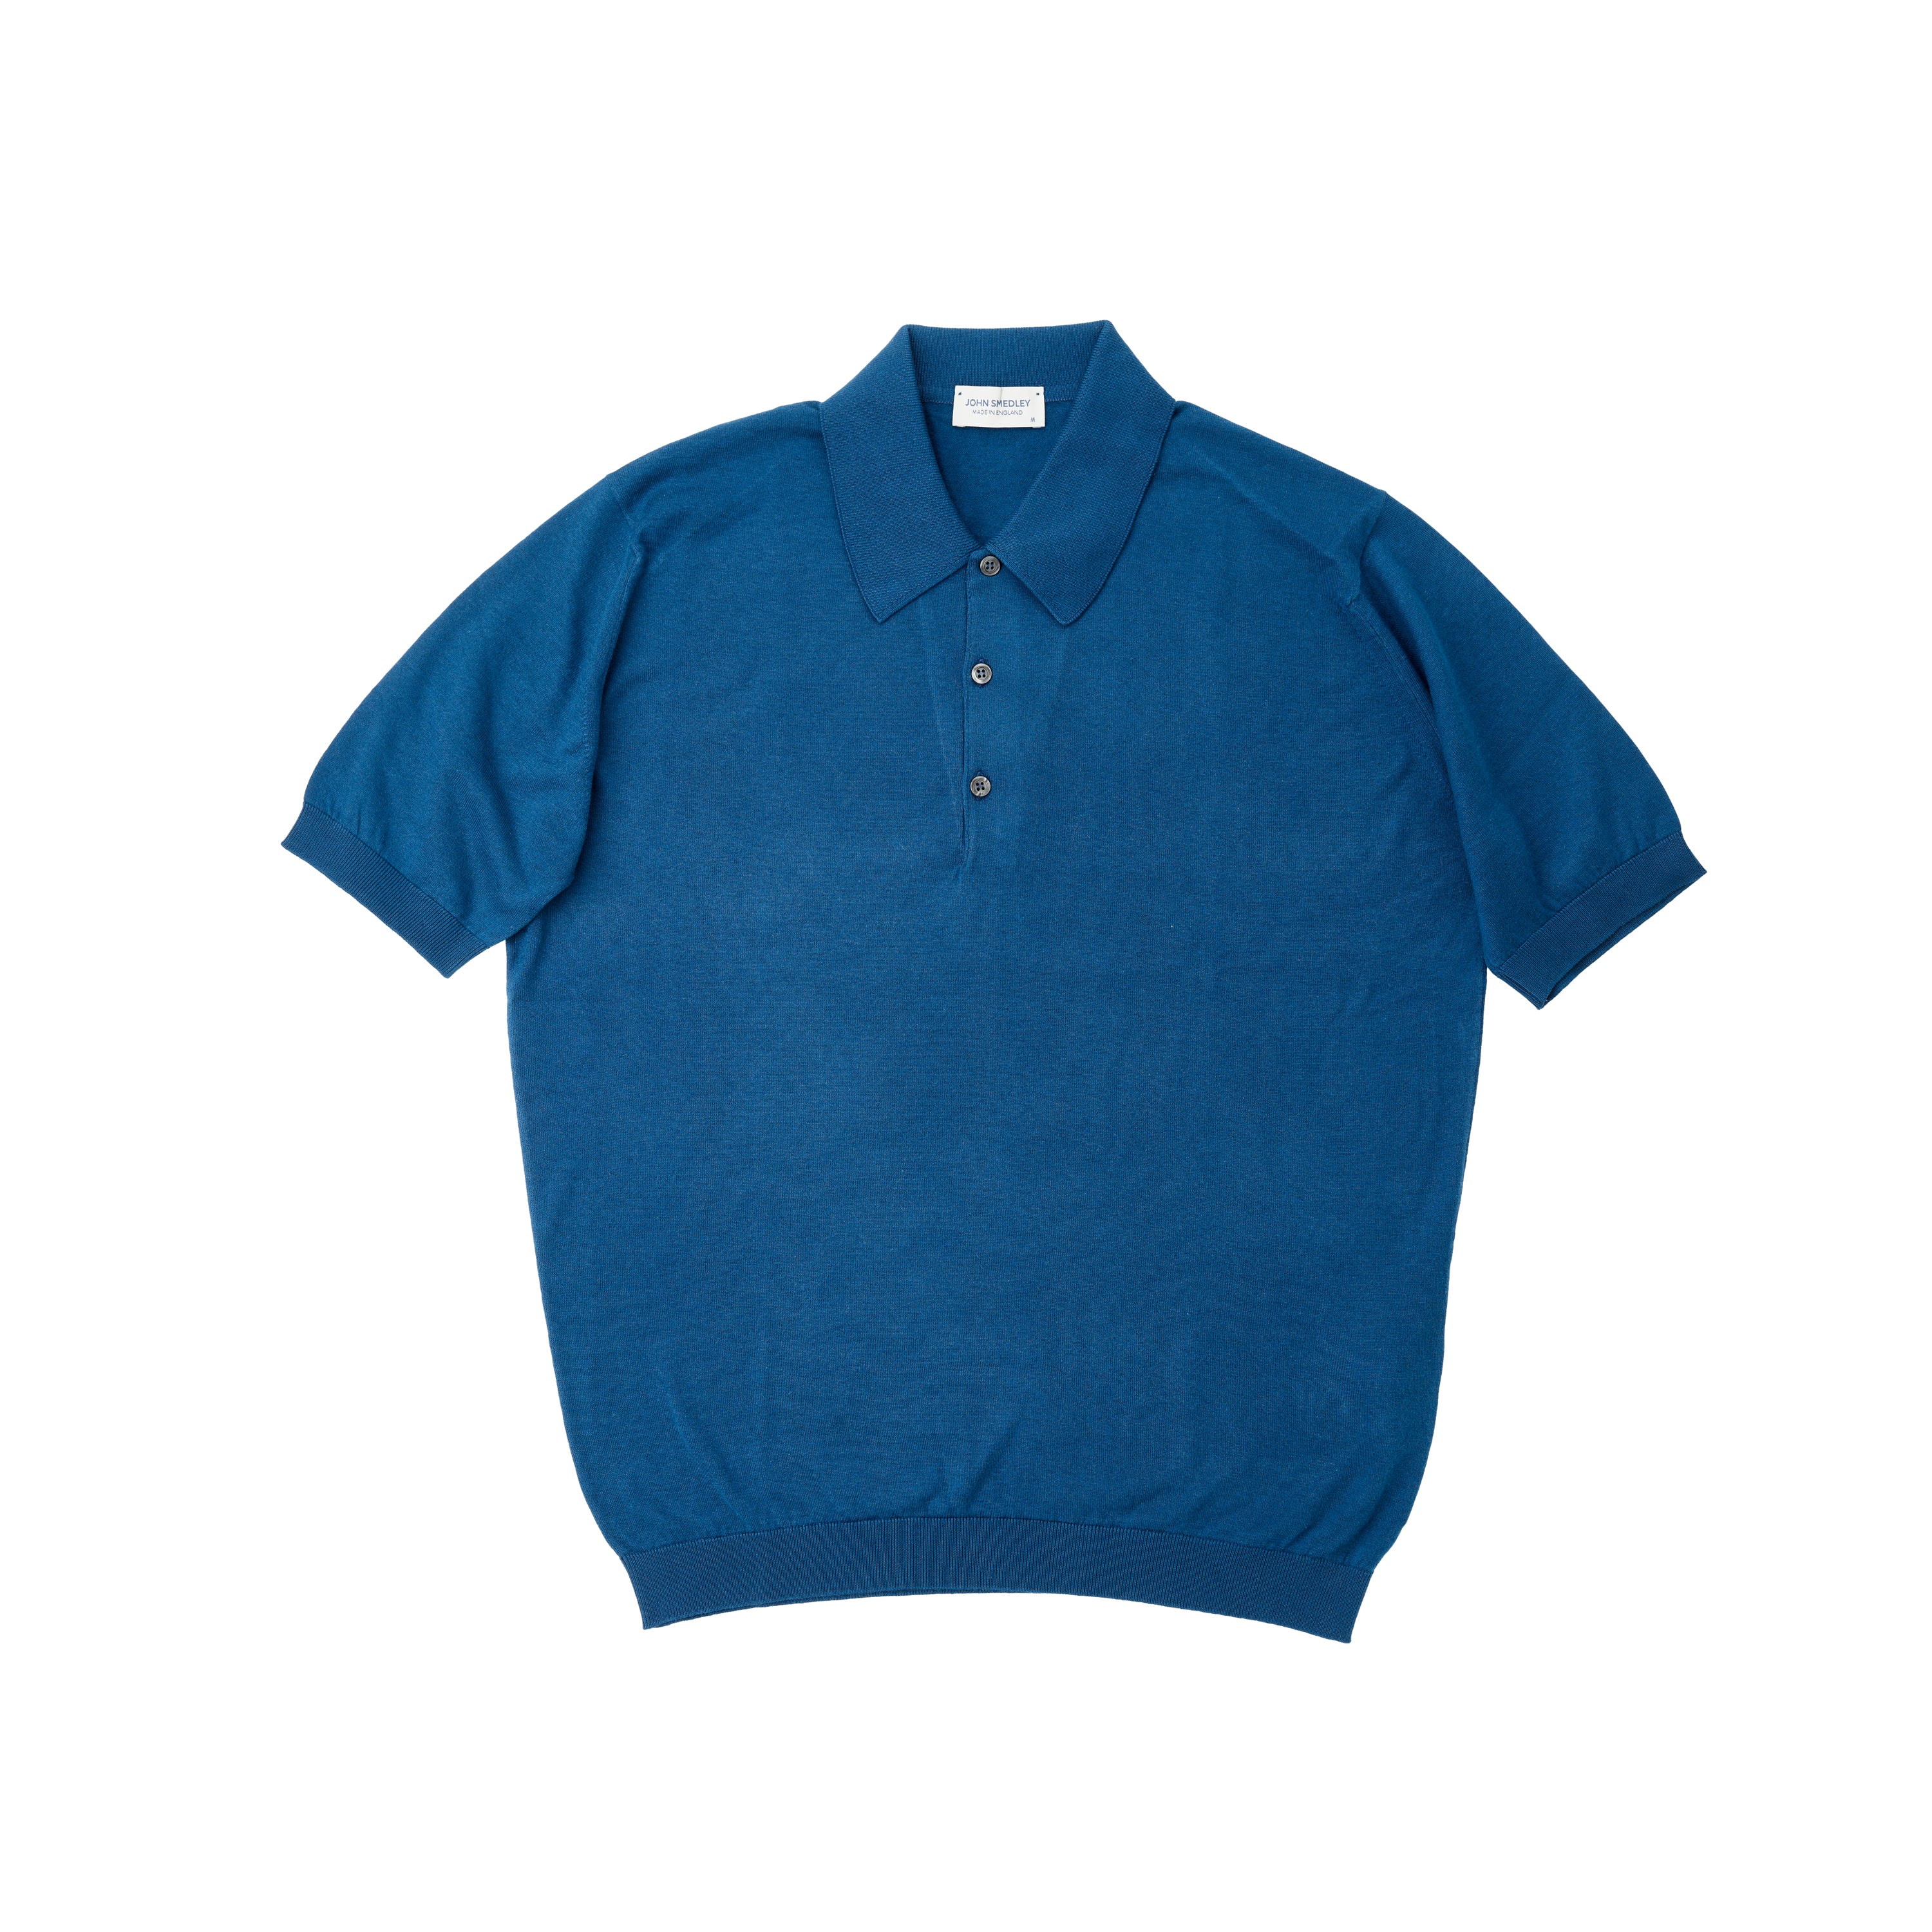 John Smedley Sea Island Cotton Indigo Polo Shirt